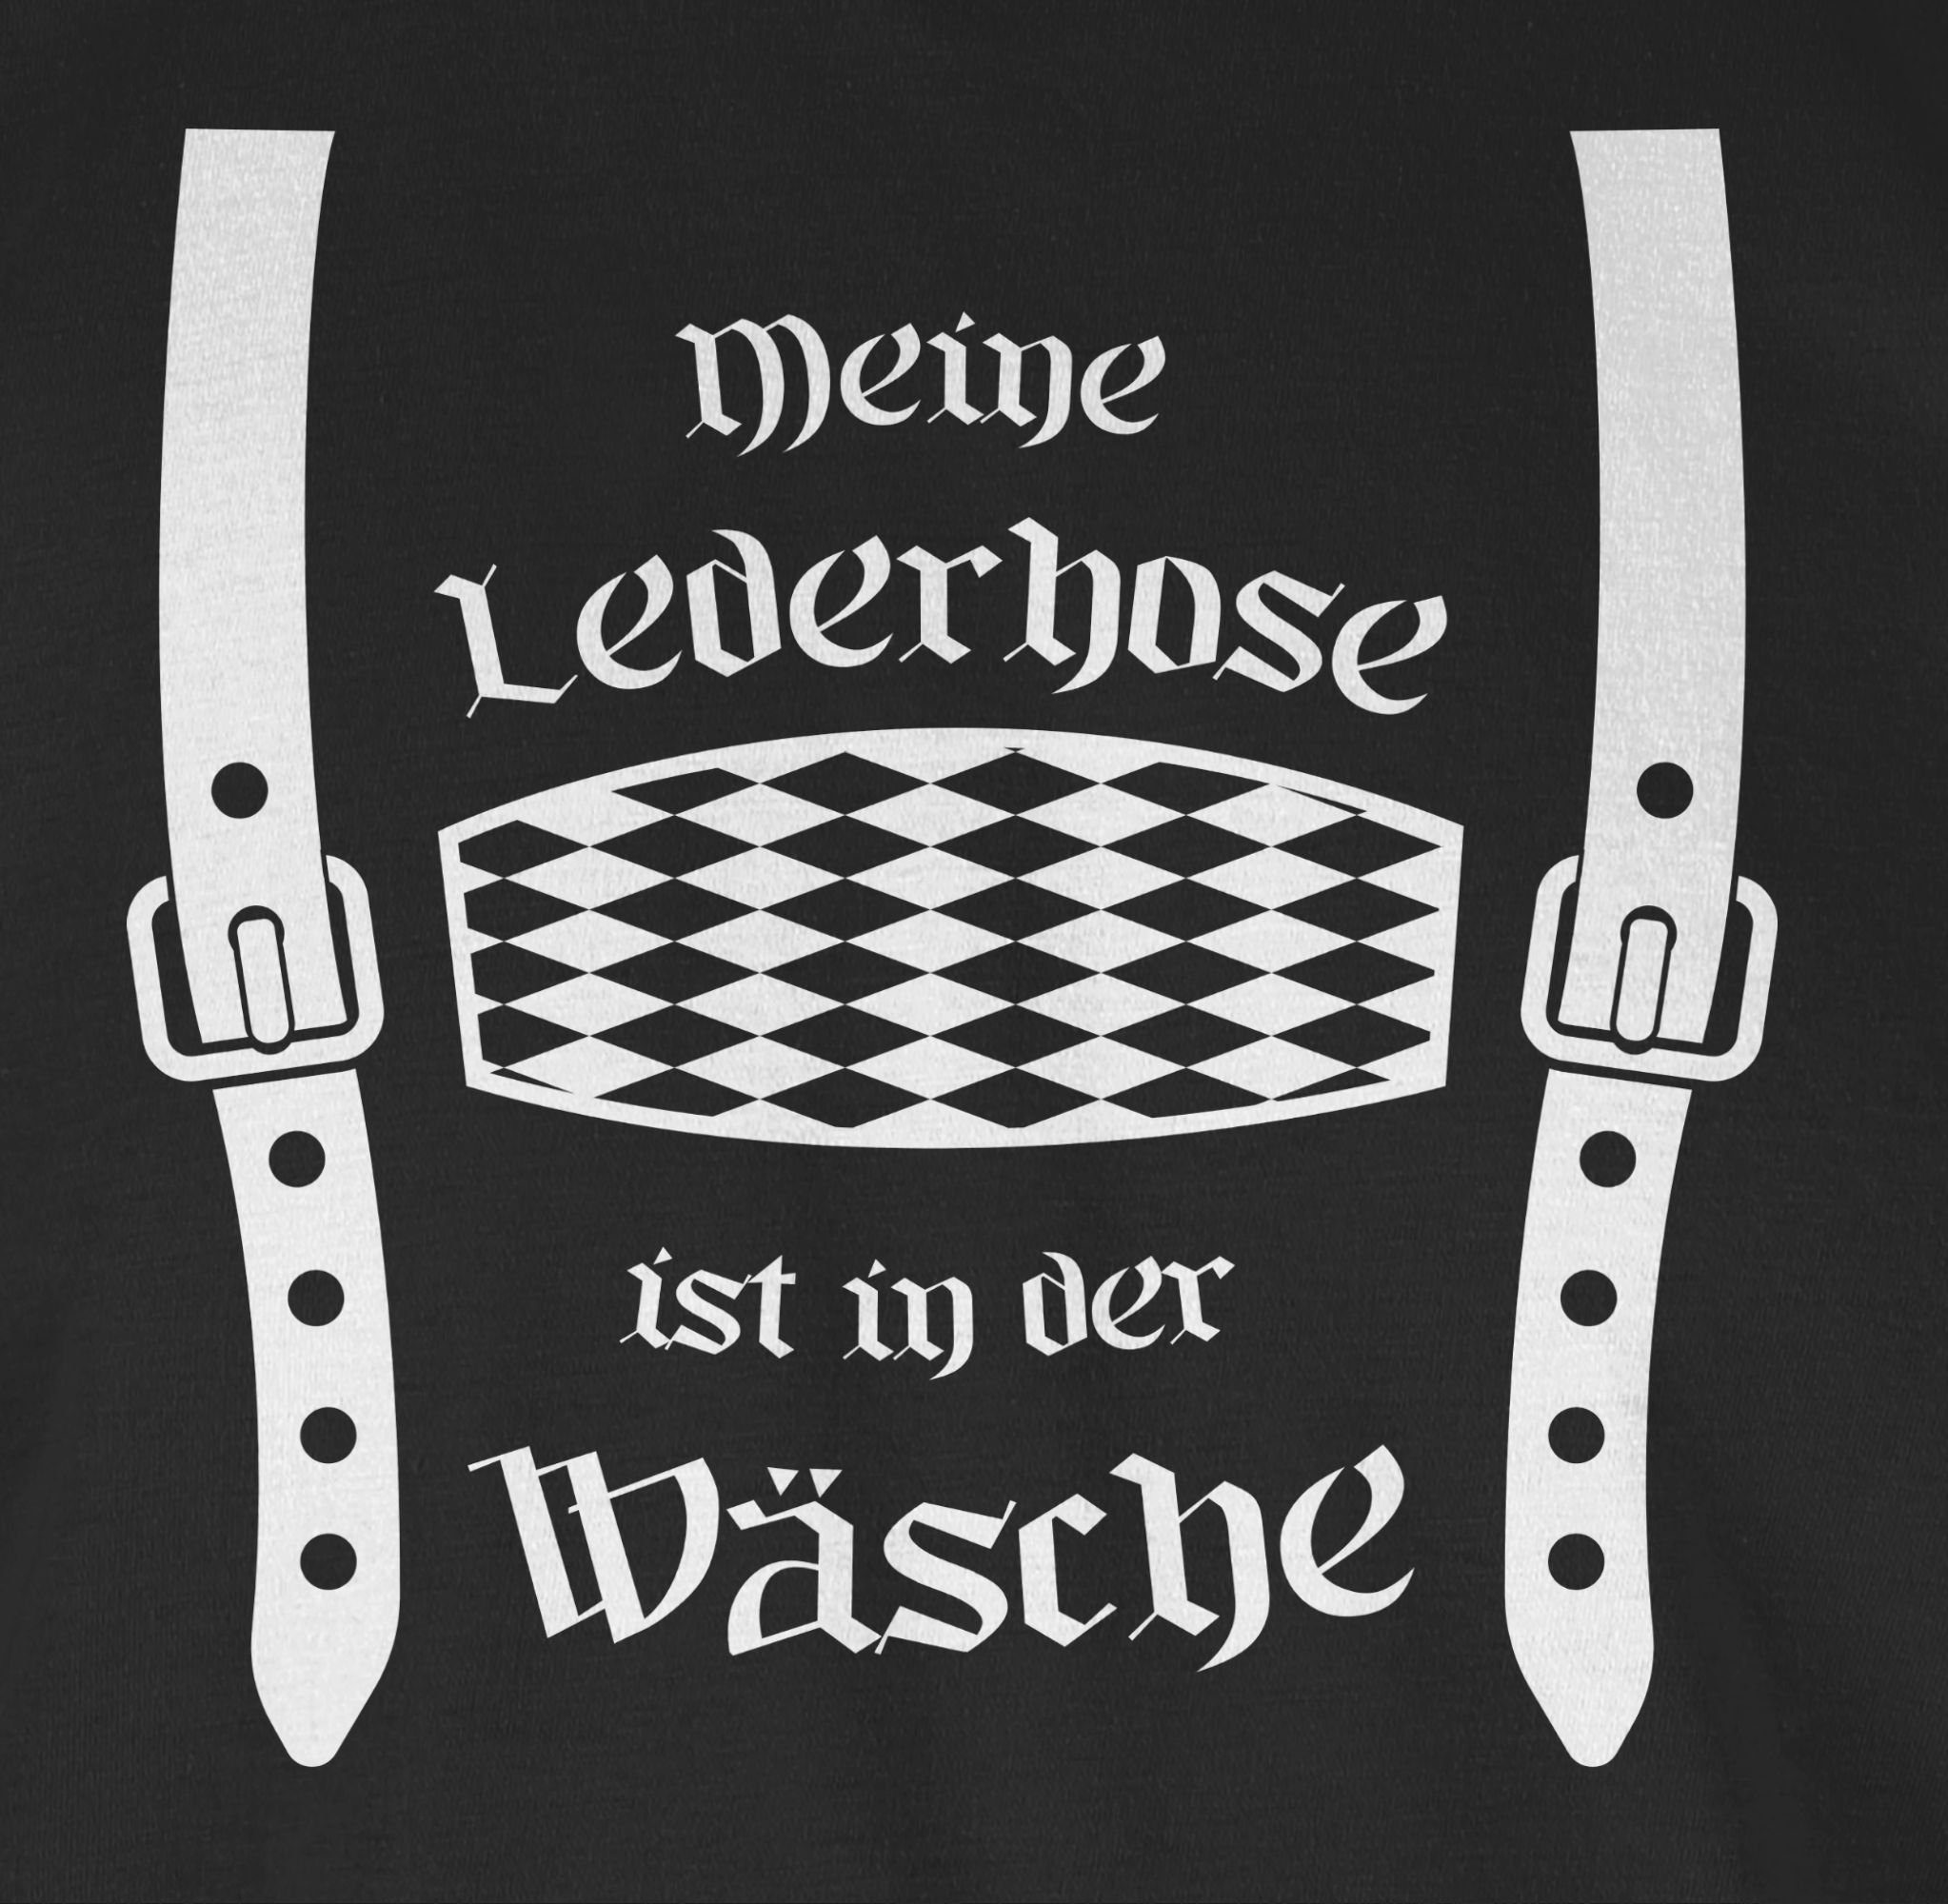 Lederhose T-Shirt in Shirtracer Herren Mode Meine ist Schwarz 1 der Rauten Wäsche Oktoberfest für